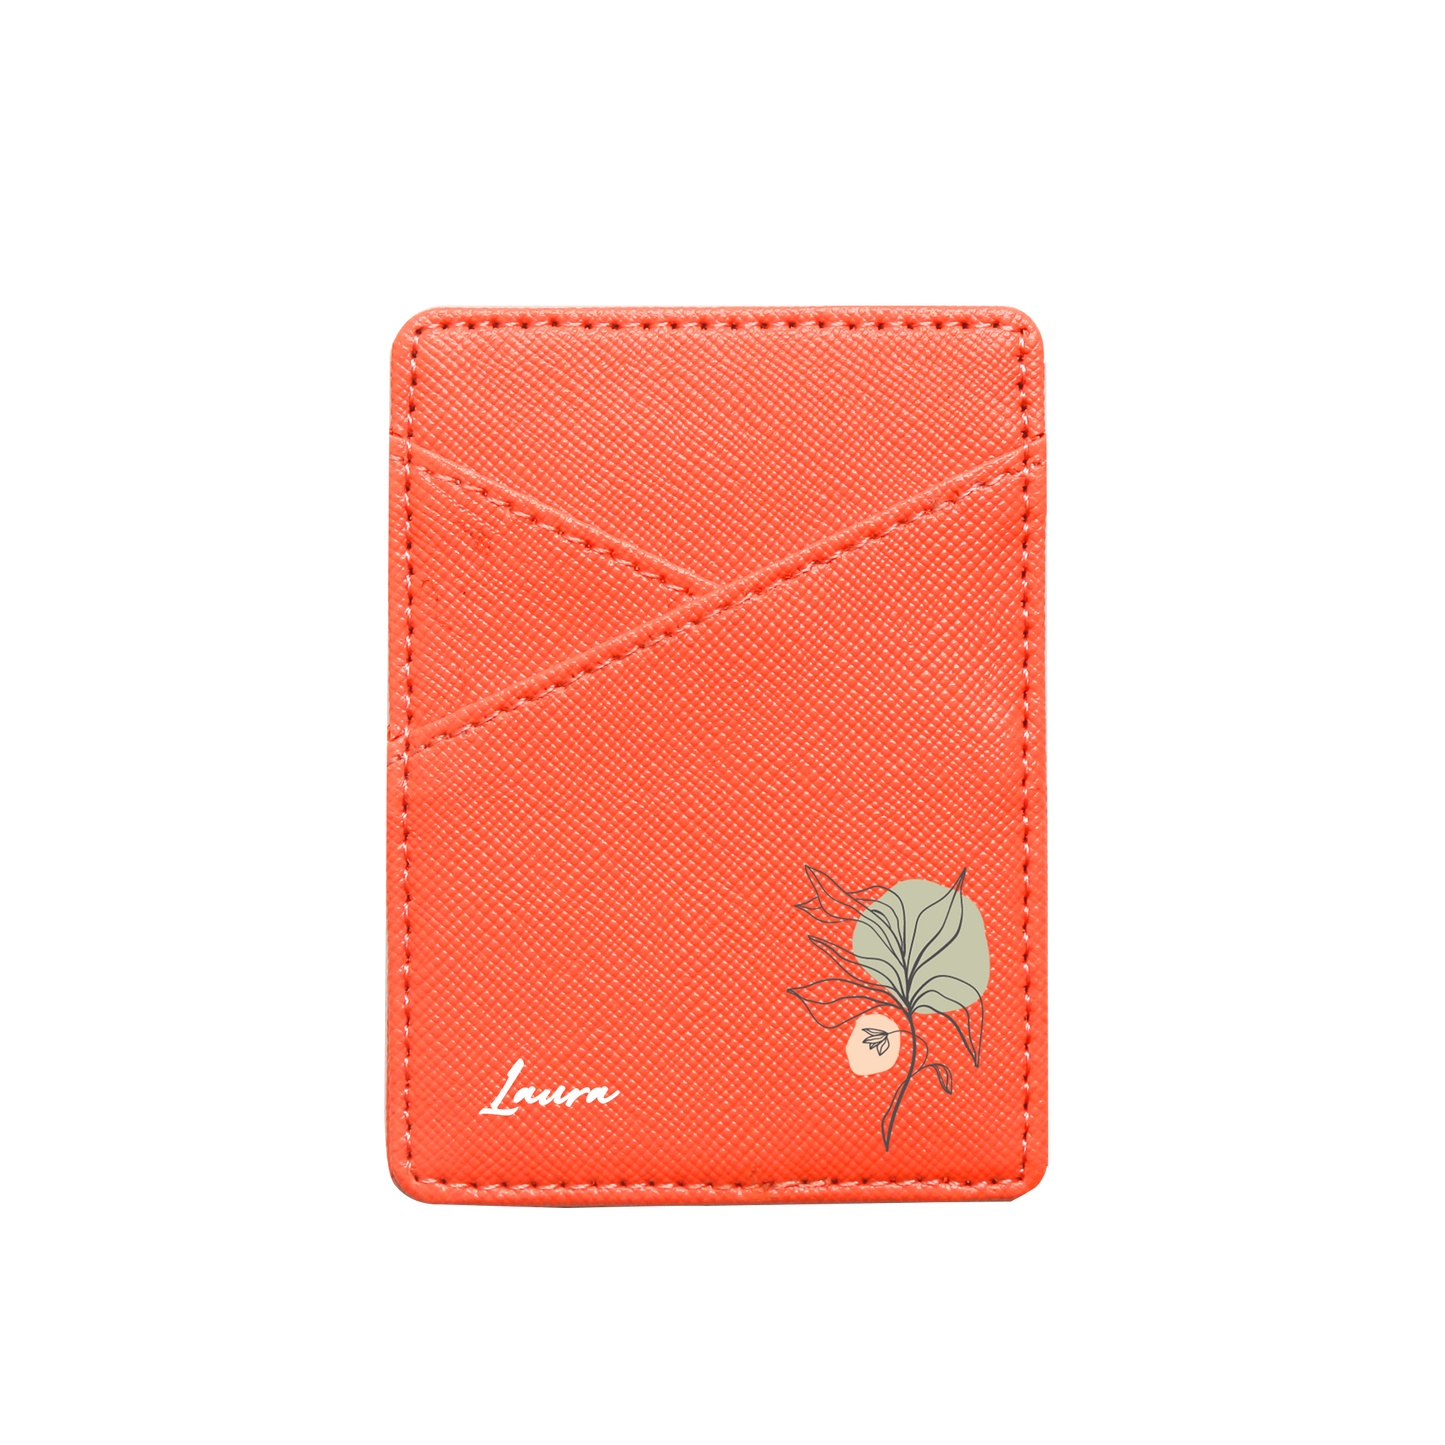 Vegan Leather Pocket Wallet - Sketchy Flower 3.0